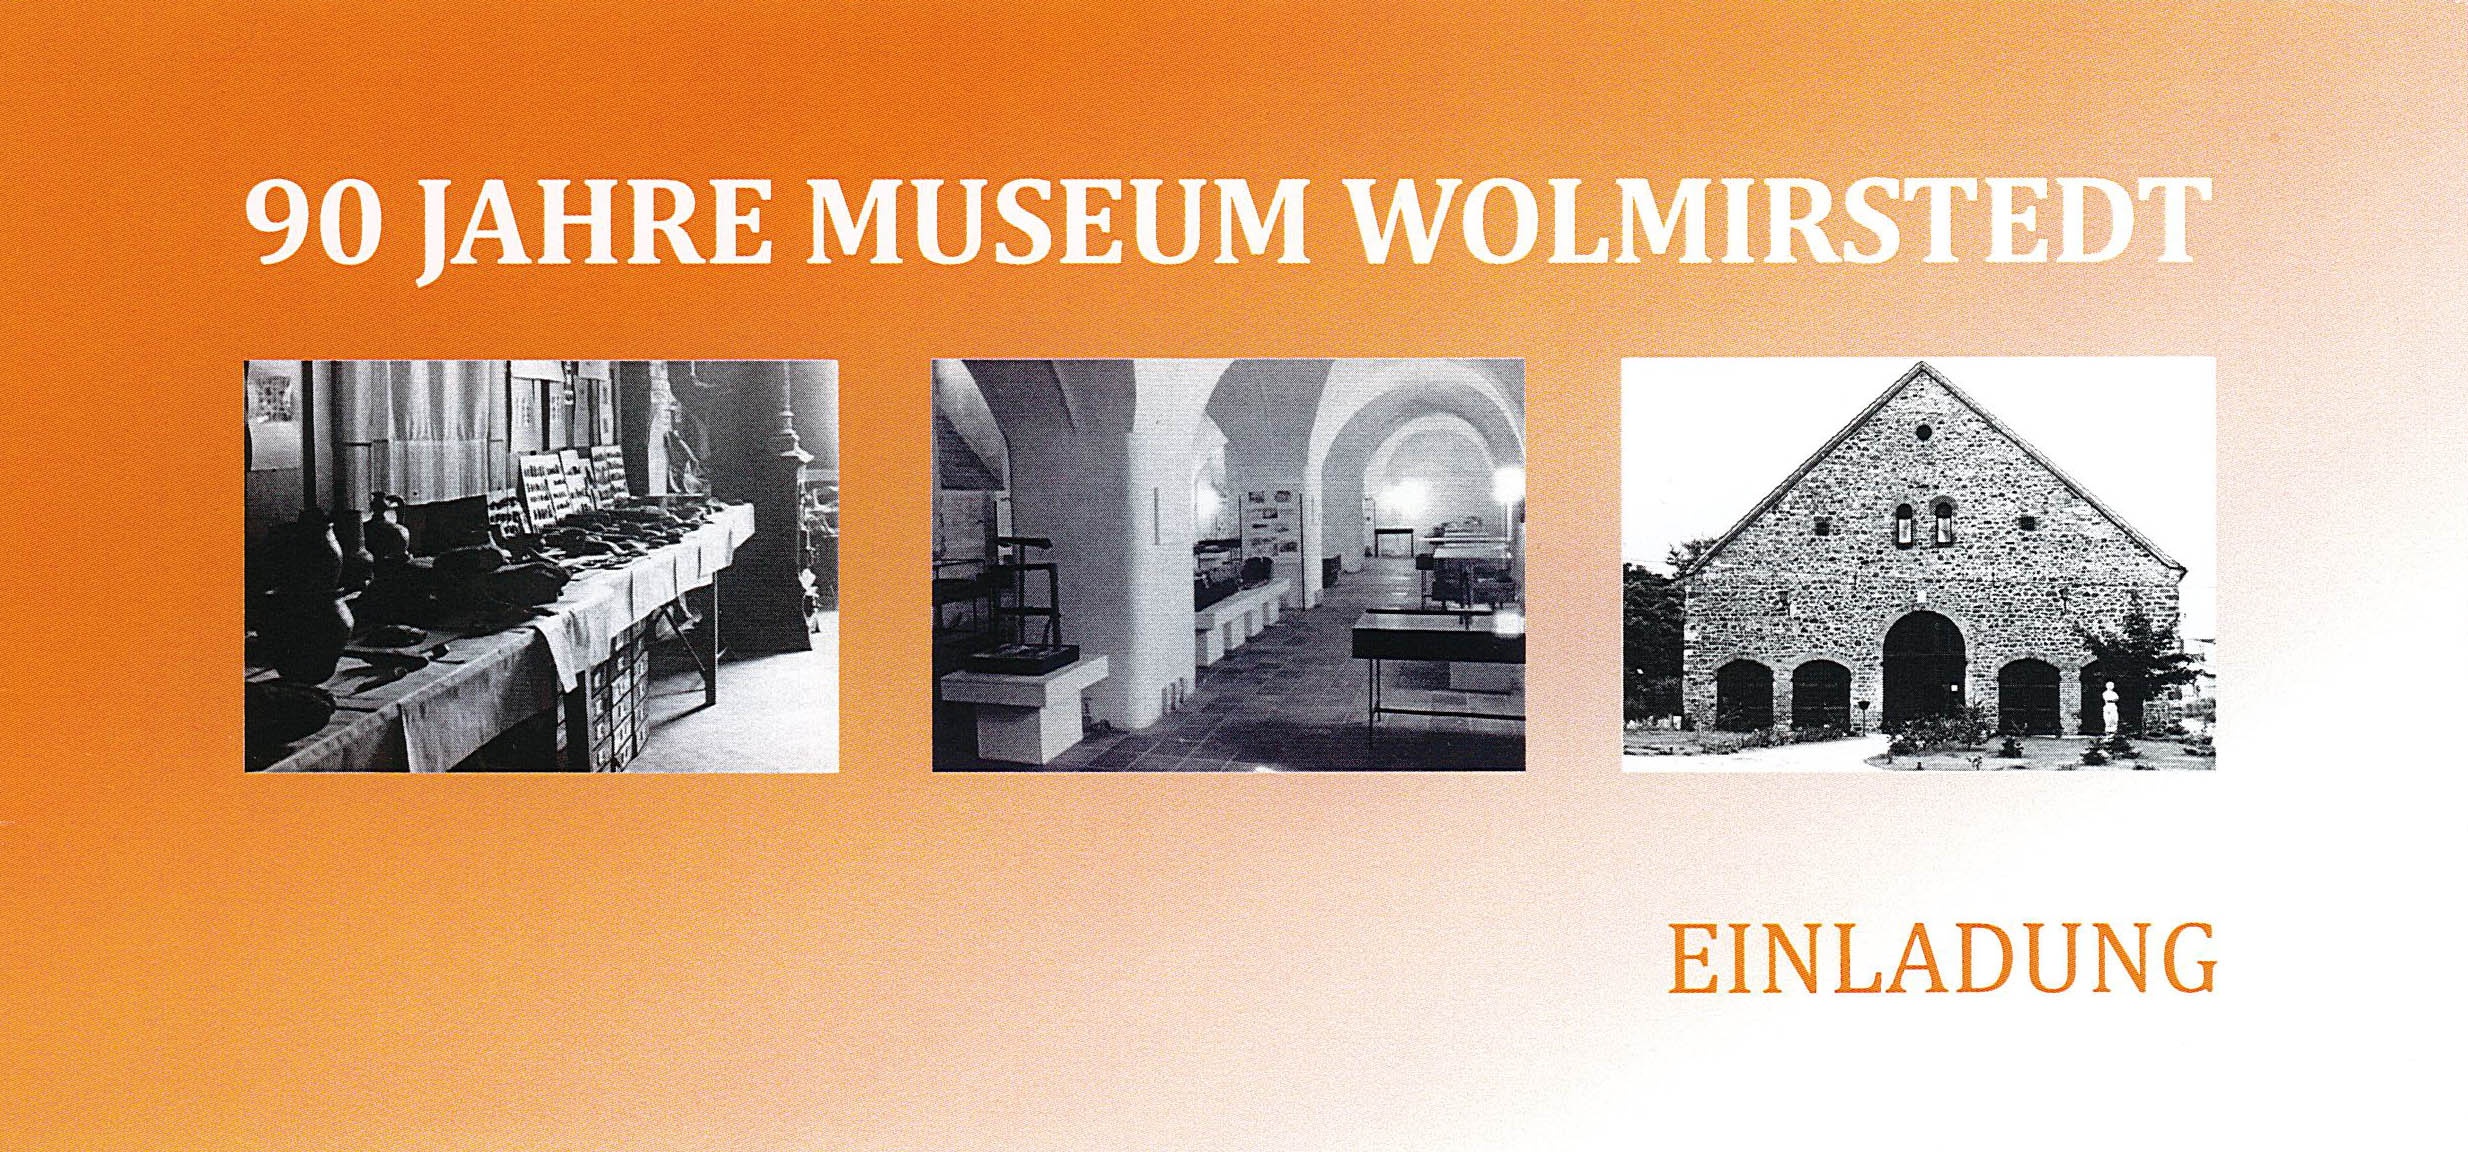 Einladung zum offiziellen Festakt "90 Jahre Museum Wolmirstedt" (Museum Wolmirstedt RR-F)